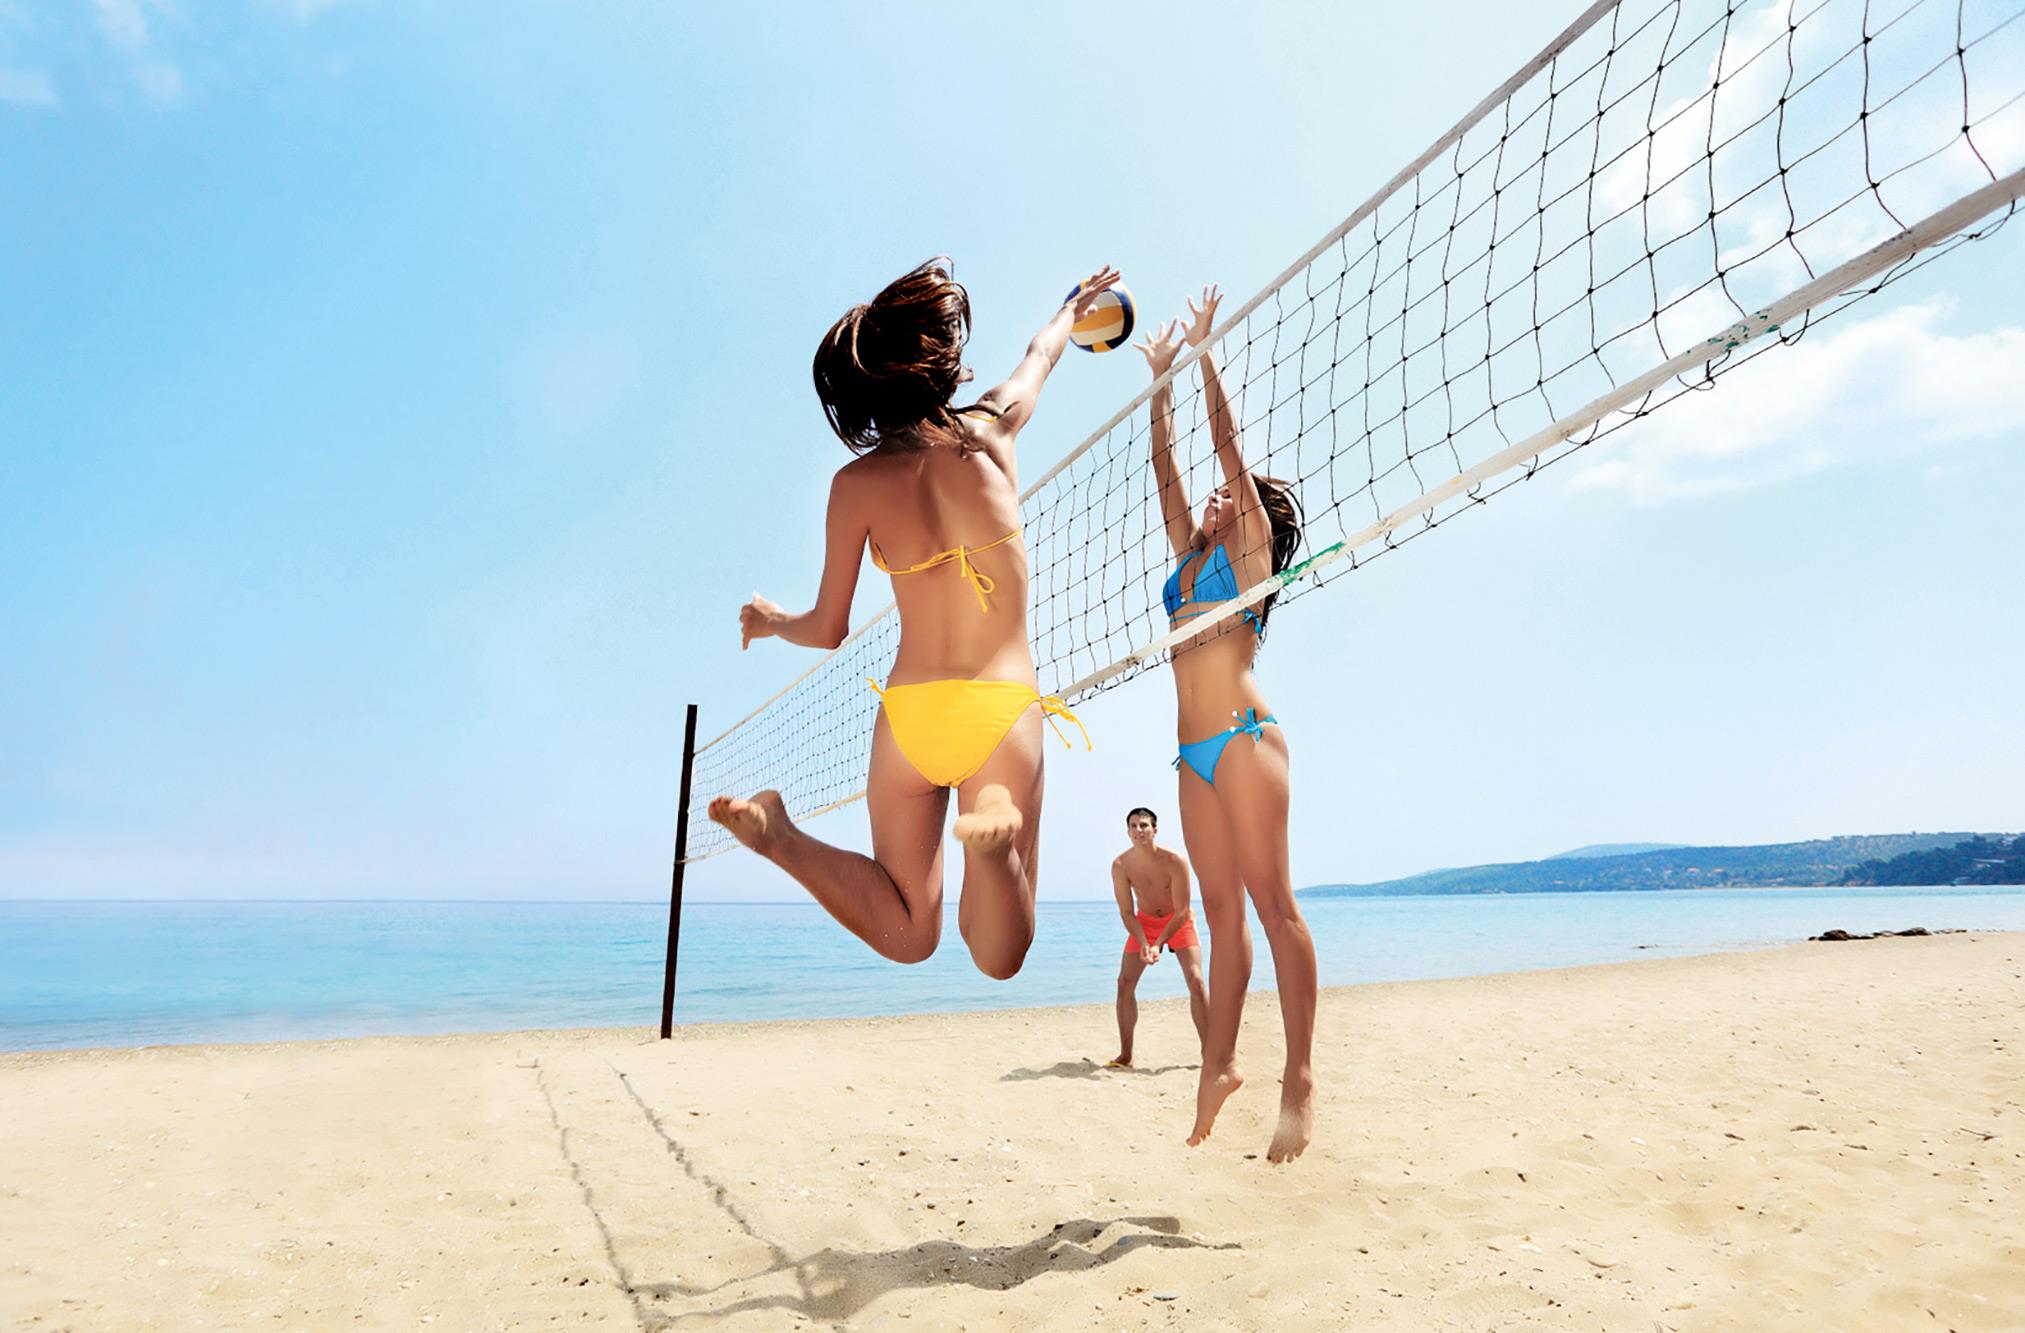 Развлечения на пляже. Волейбол на пляже. Спорт на пляже. Пляжный волейбол. Пляжный волейбол на пляже.